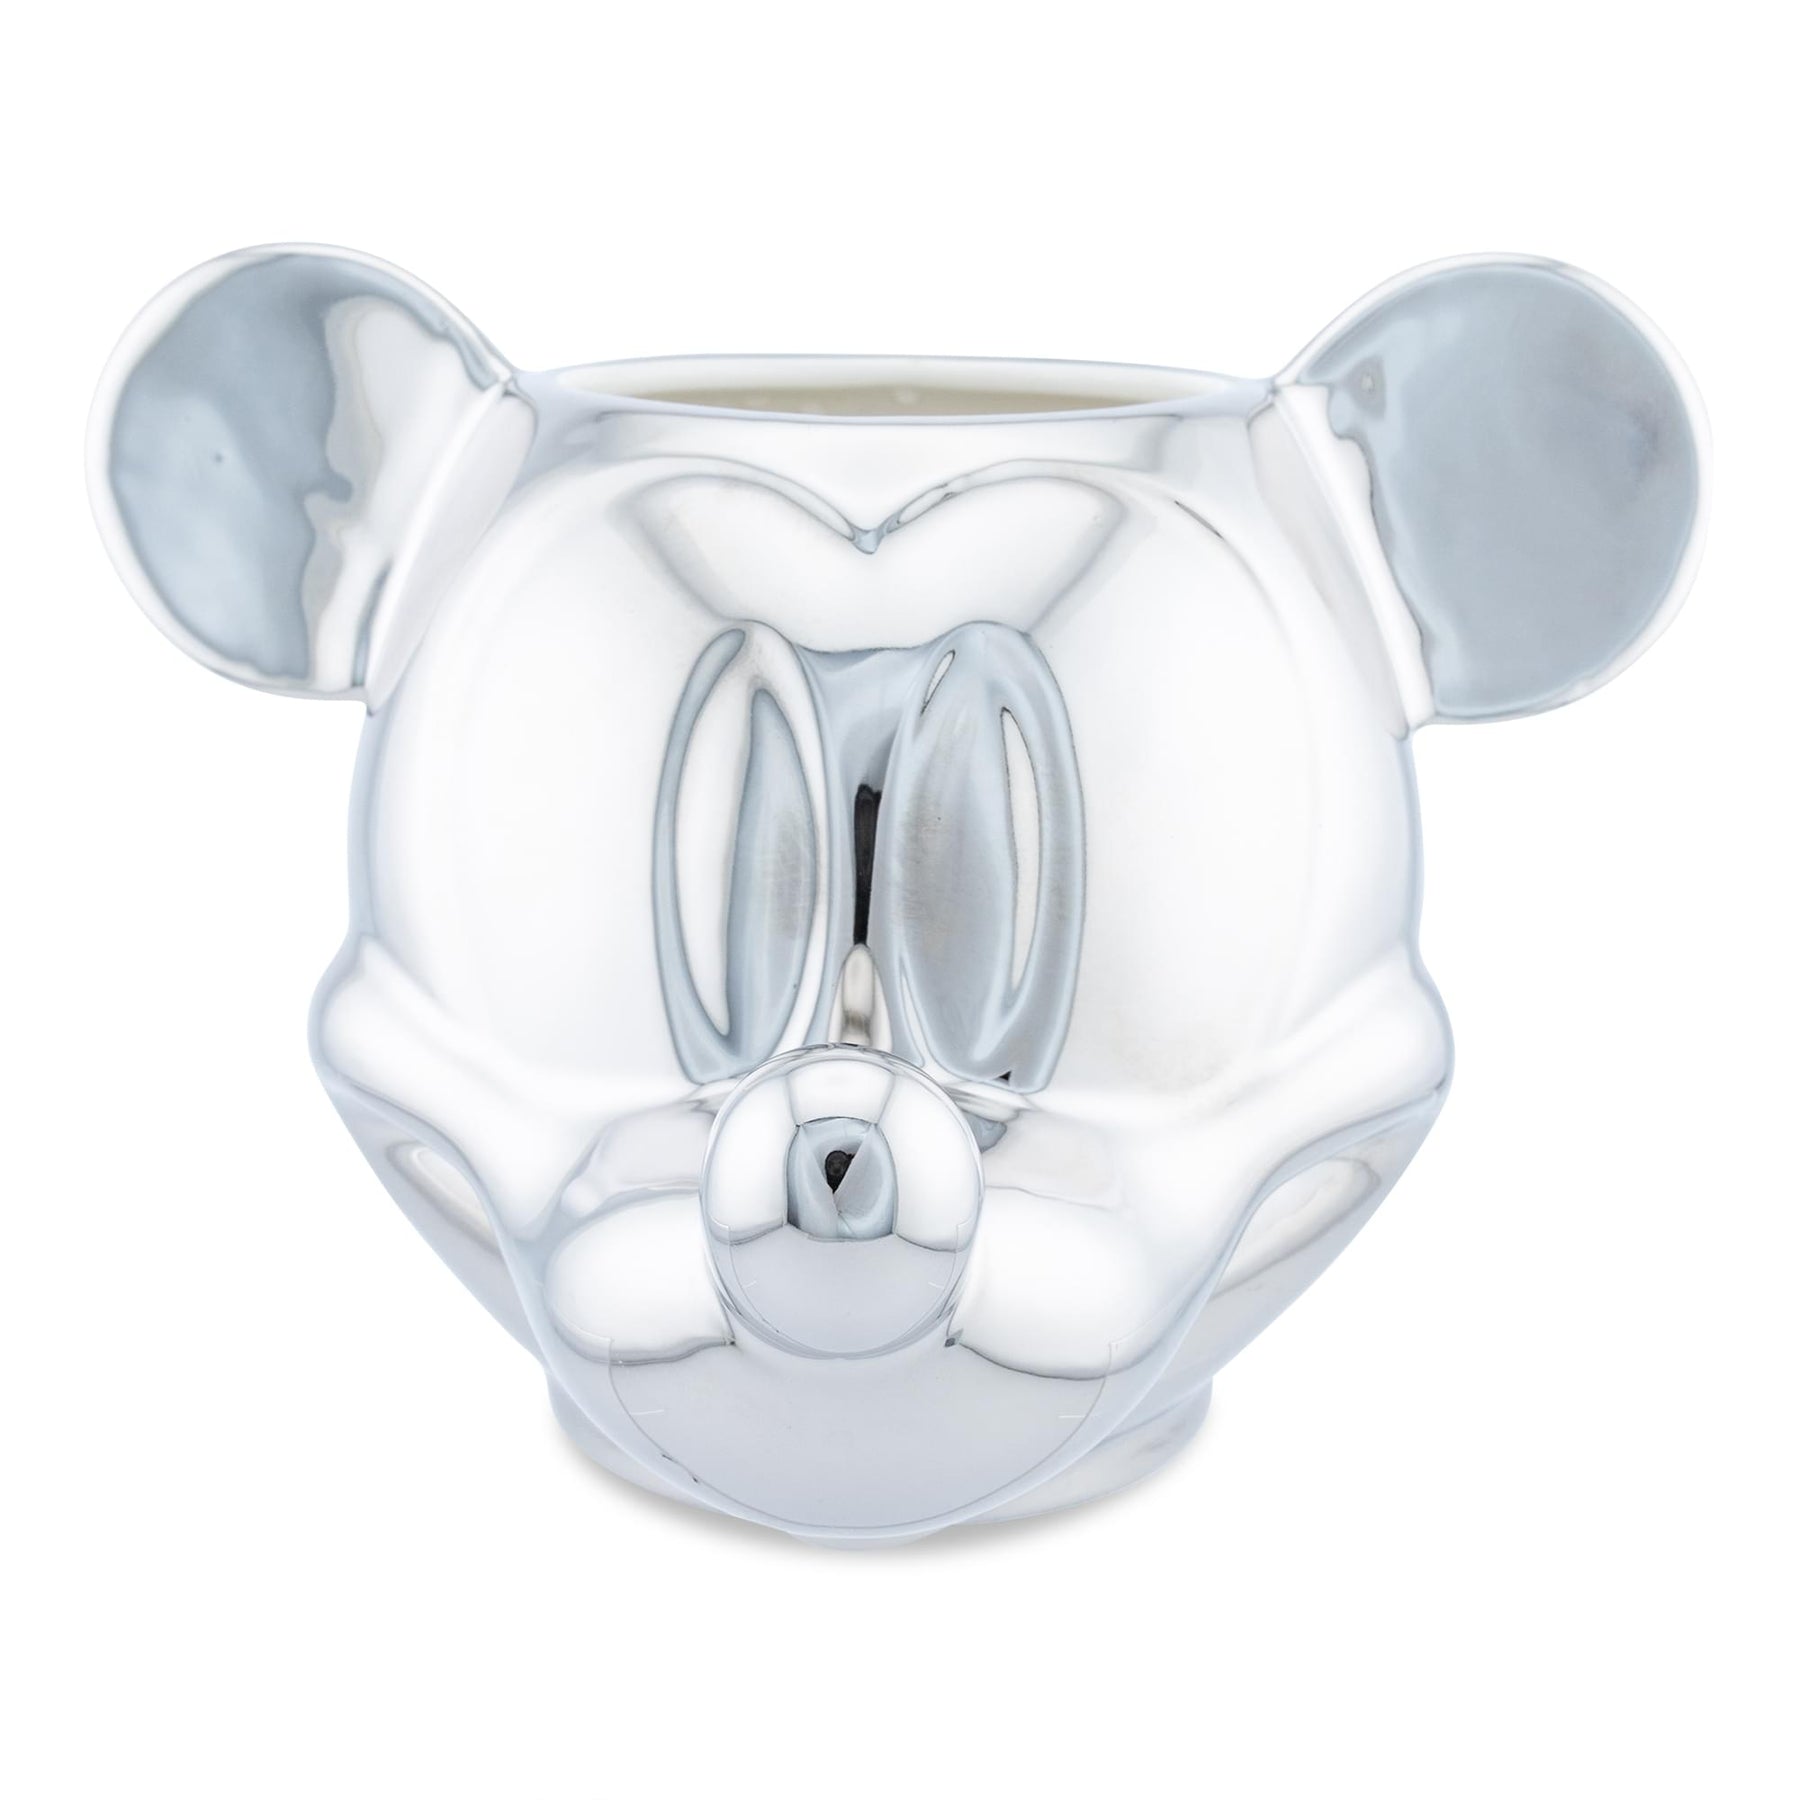 Walt Disney World Mickey Mouse 3D Mug 2 Available 